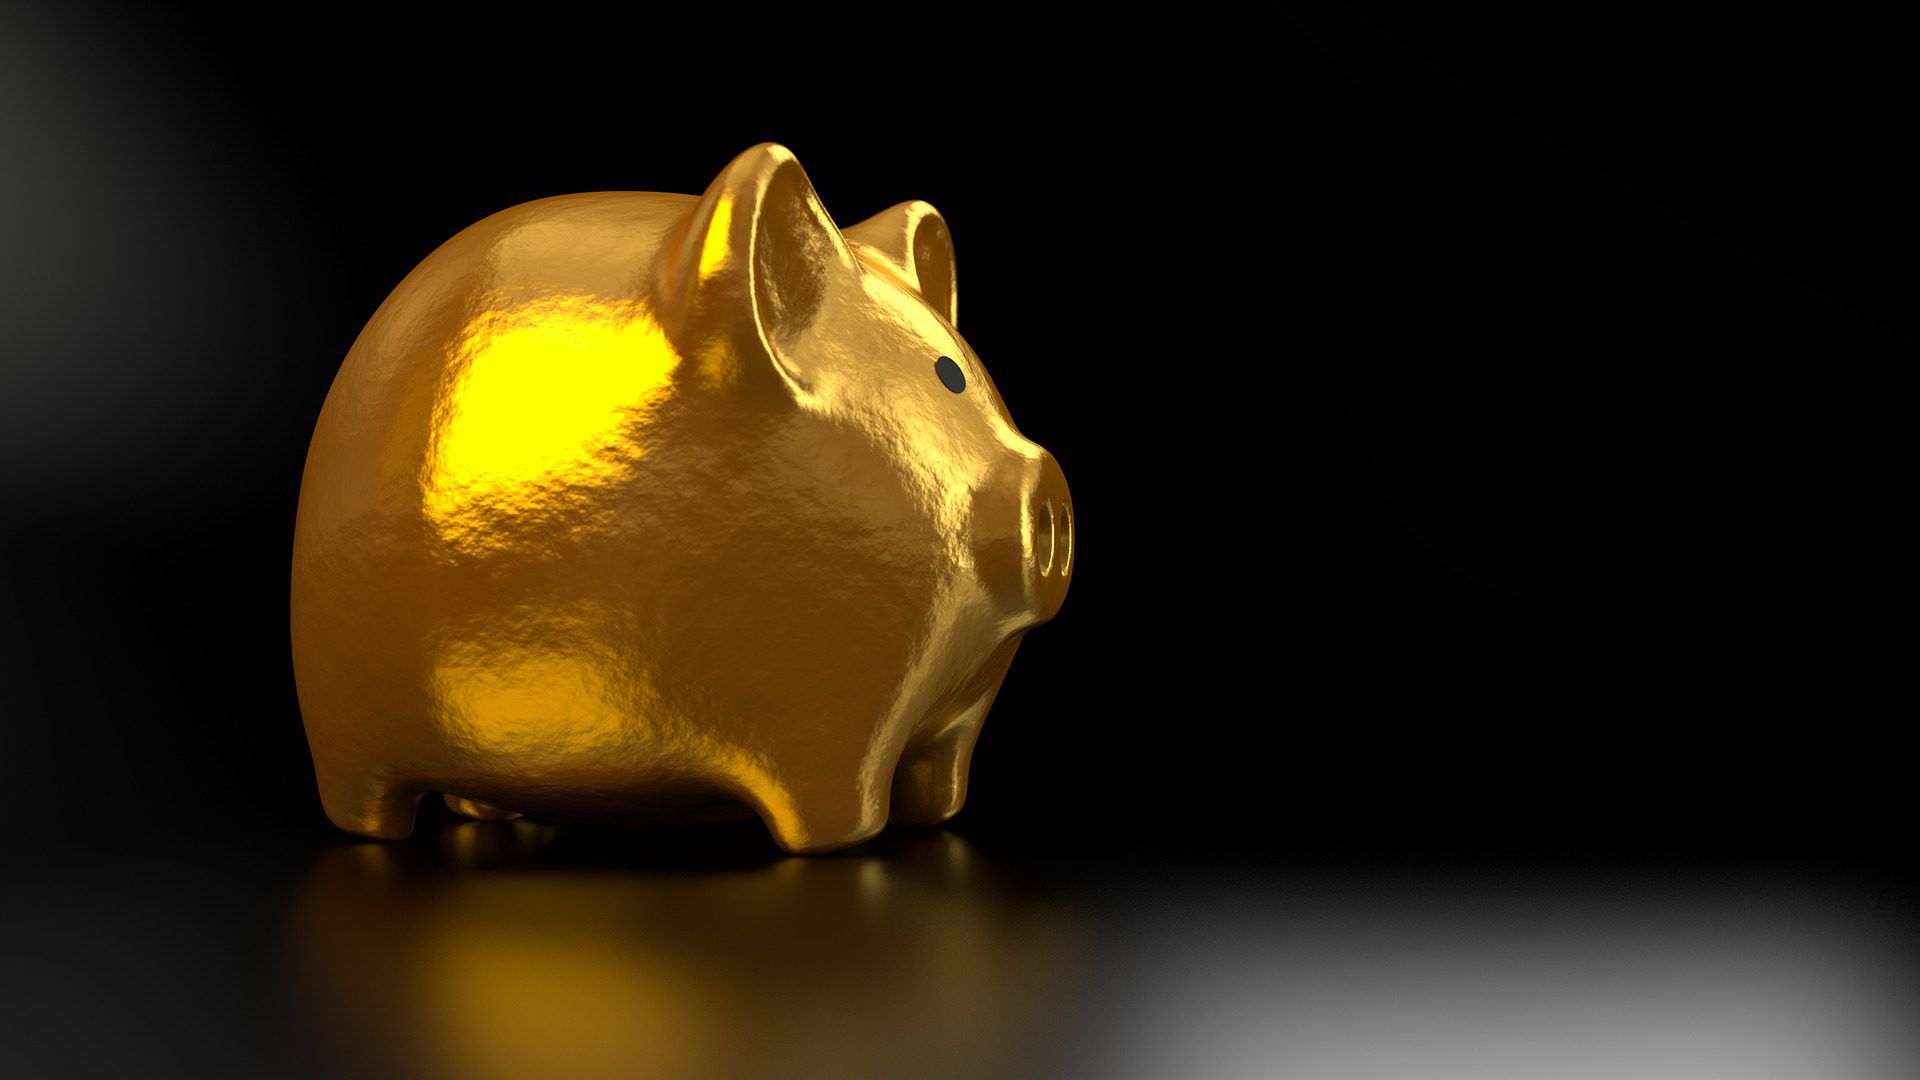 Hacienda también propuso aumentar la tasa de retención del ahorro de 1.04% a 1.45%, una medida que desincentivaría el ahorro voluntario (Foto: Pixabay)